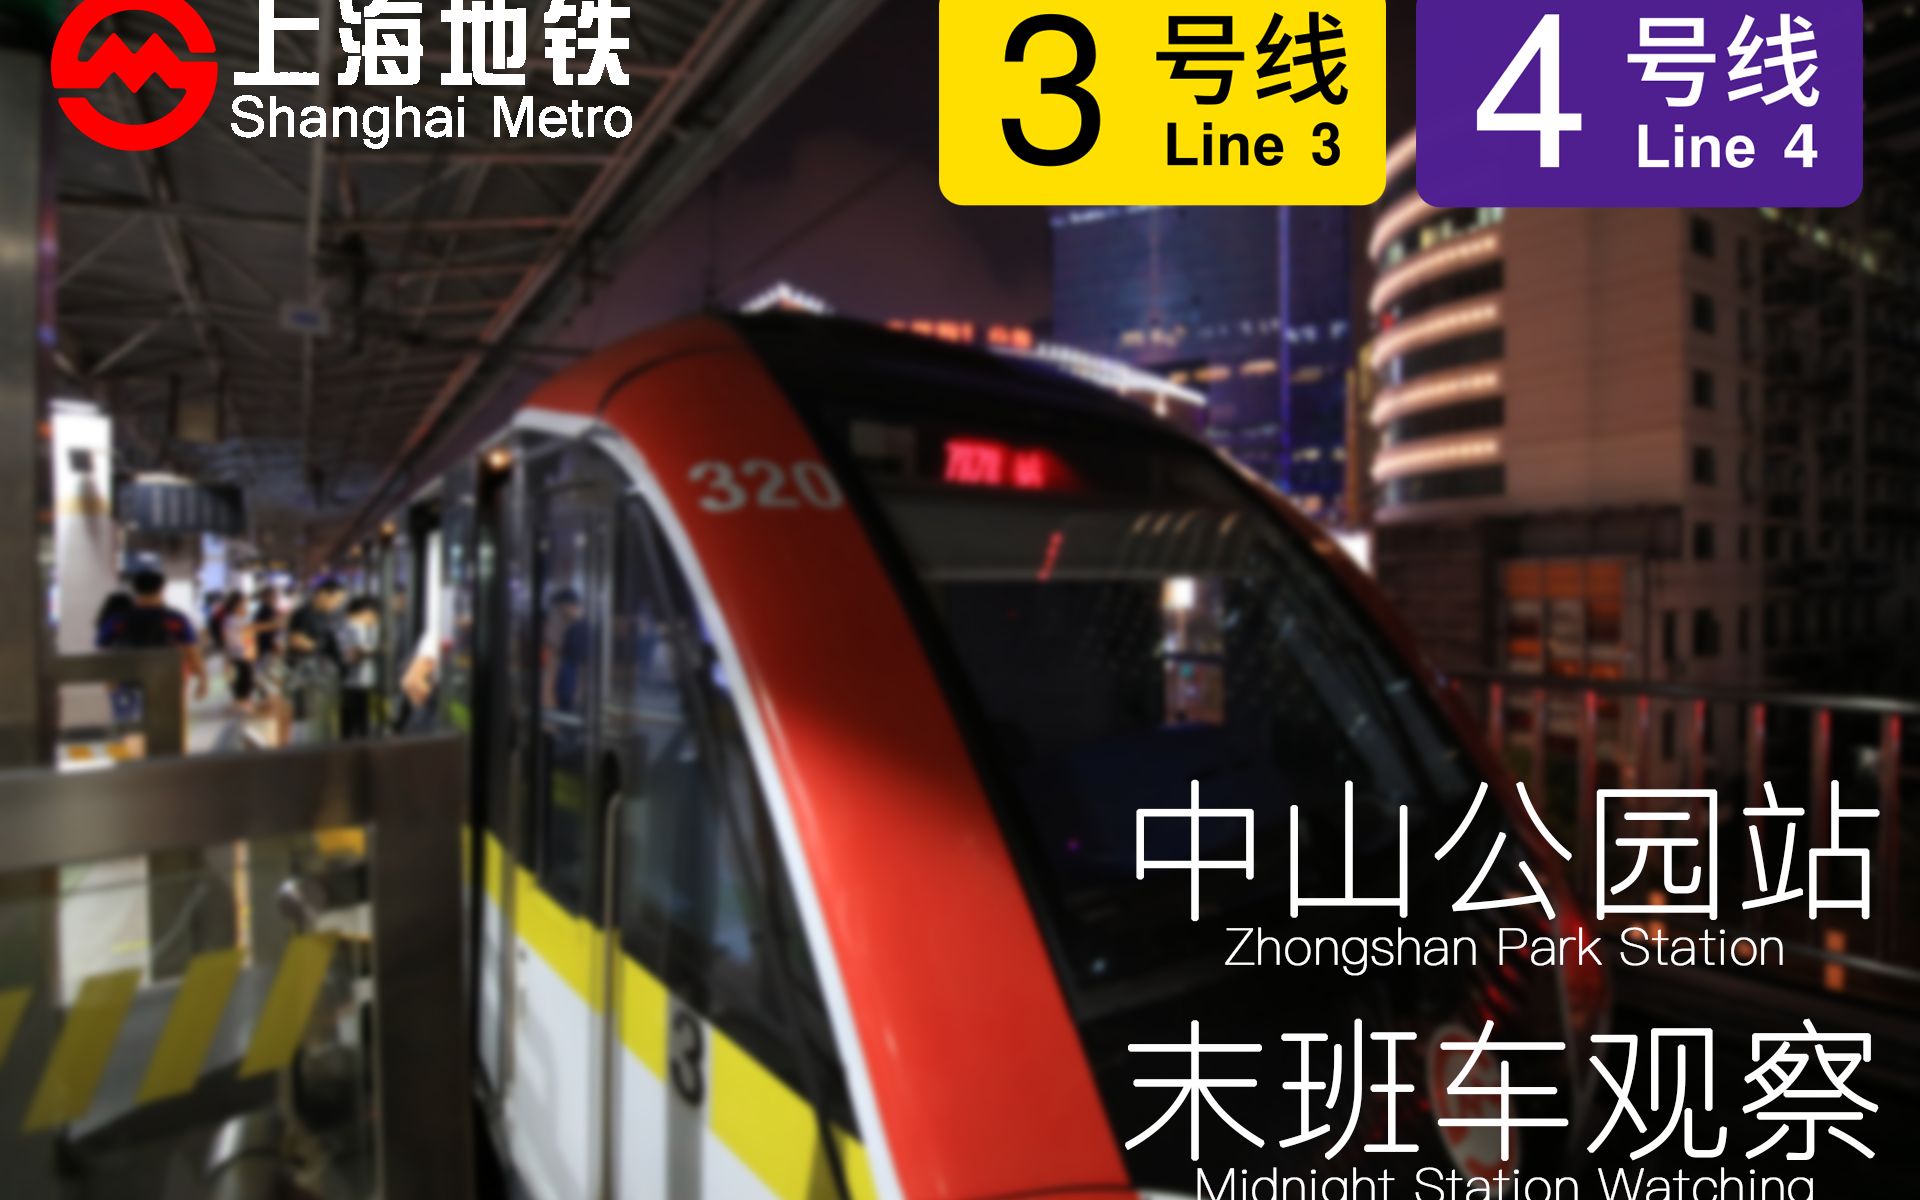 终电观测上海地铁34号线中山公园站周五末班车观察